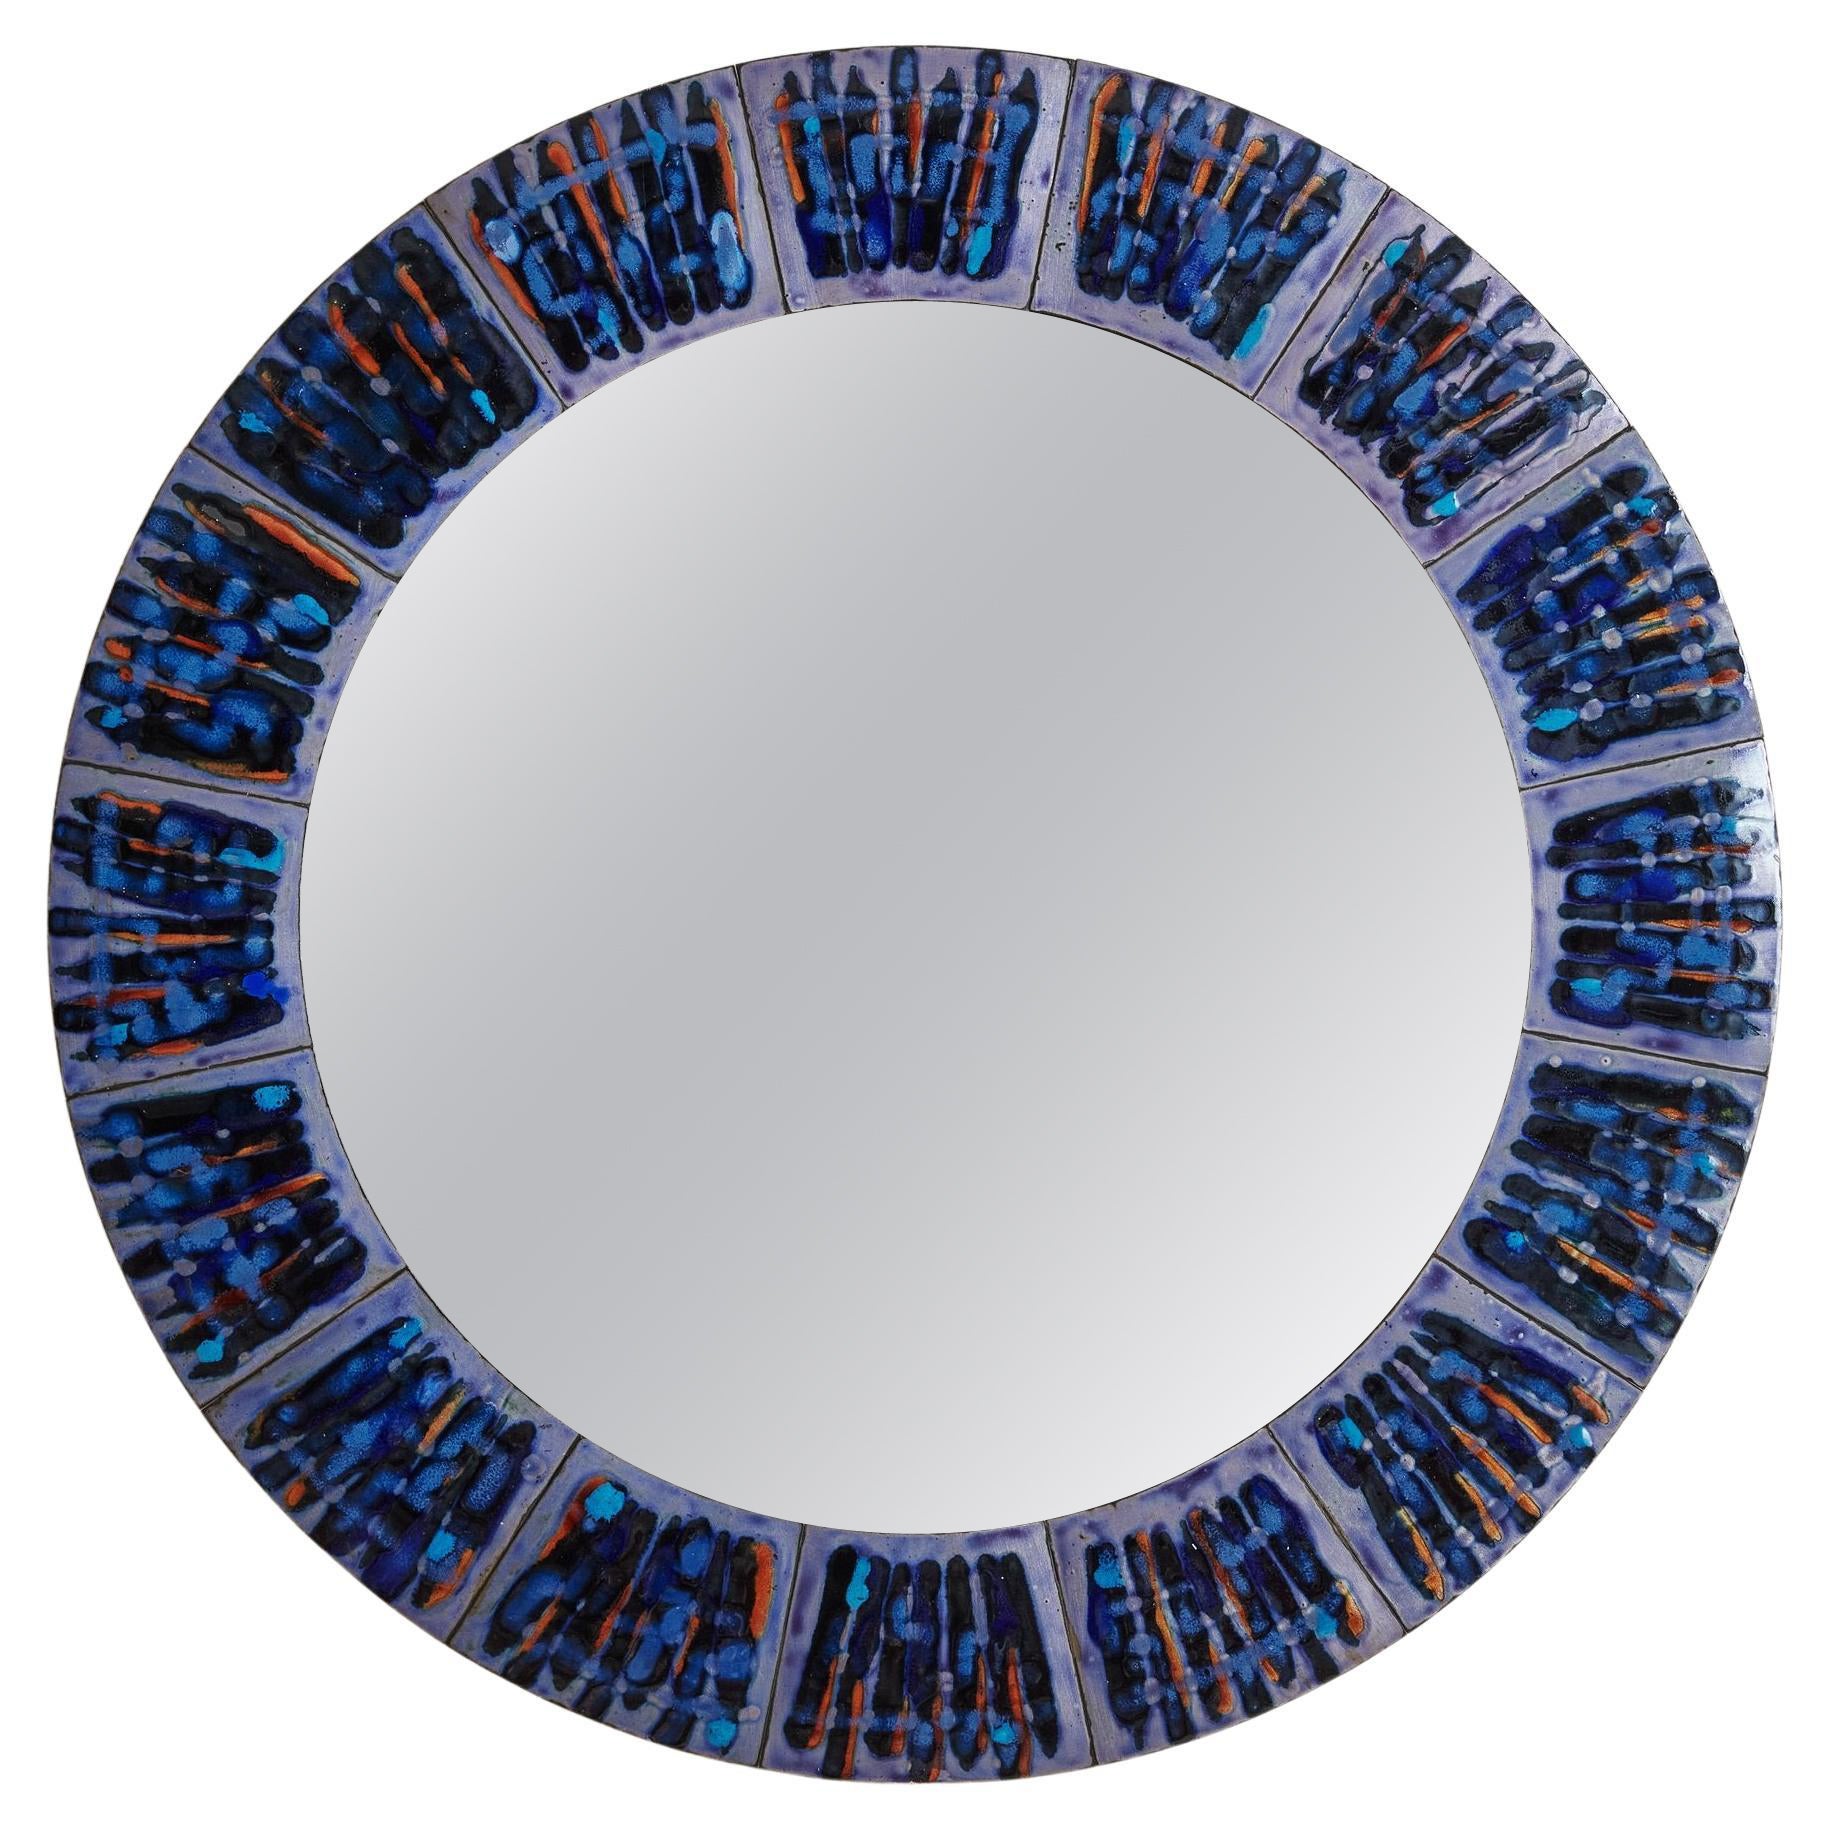 2/5 Blue Hand-Painted Enamel Mirror by Bodil Eje, Denmark 1960s